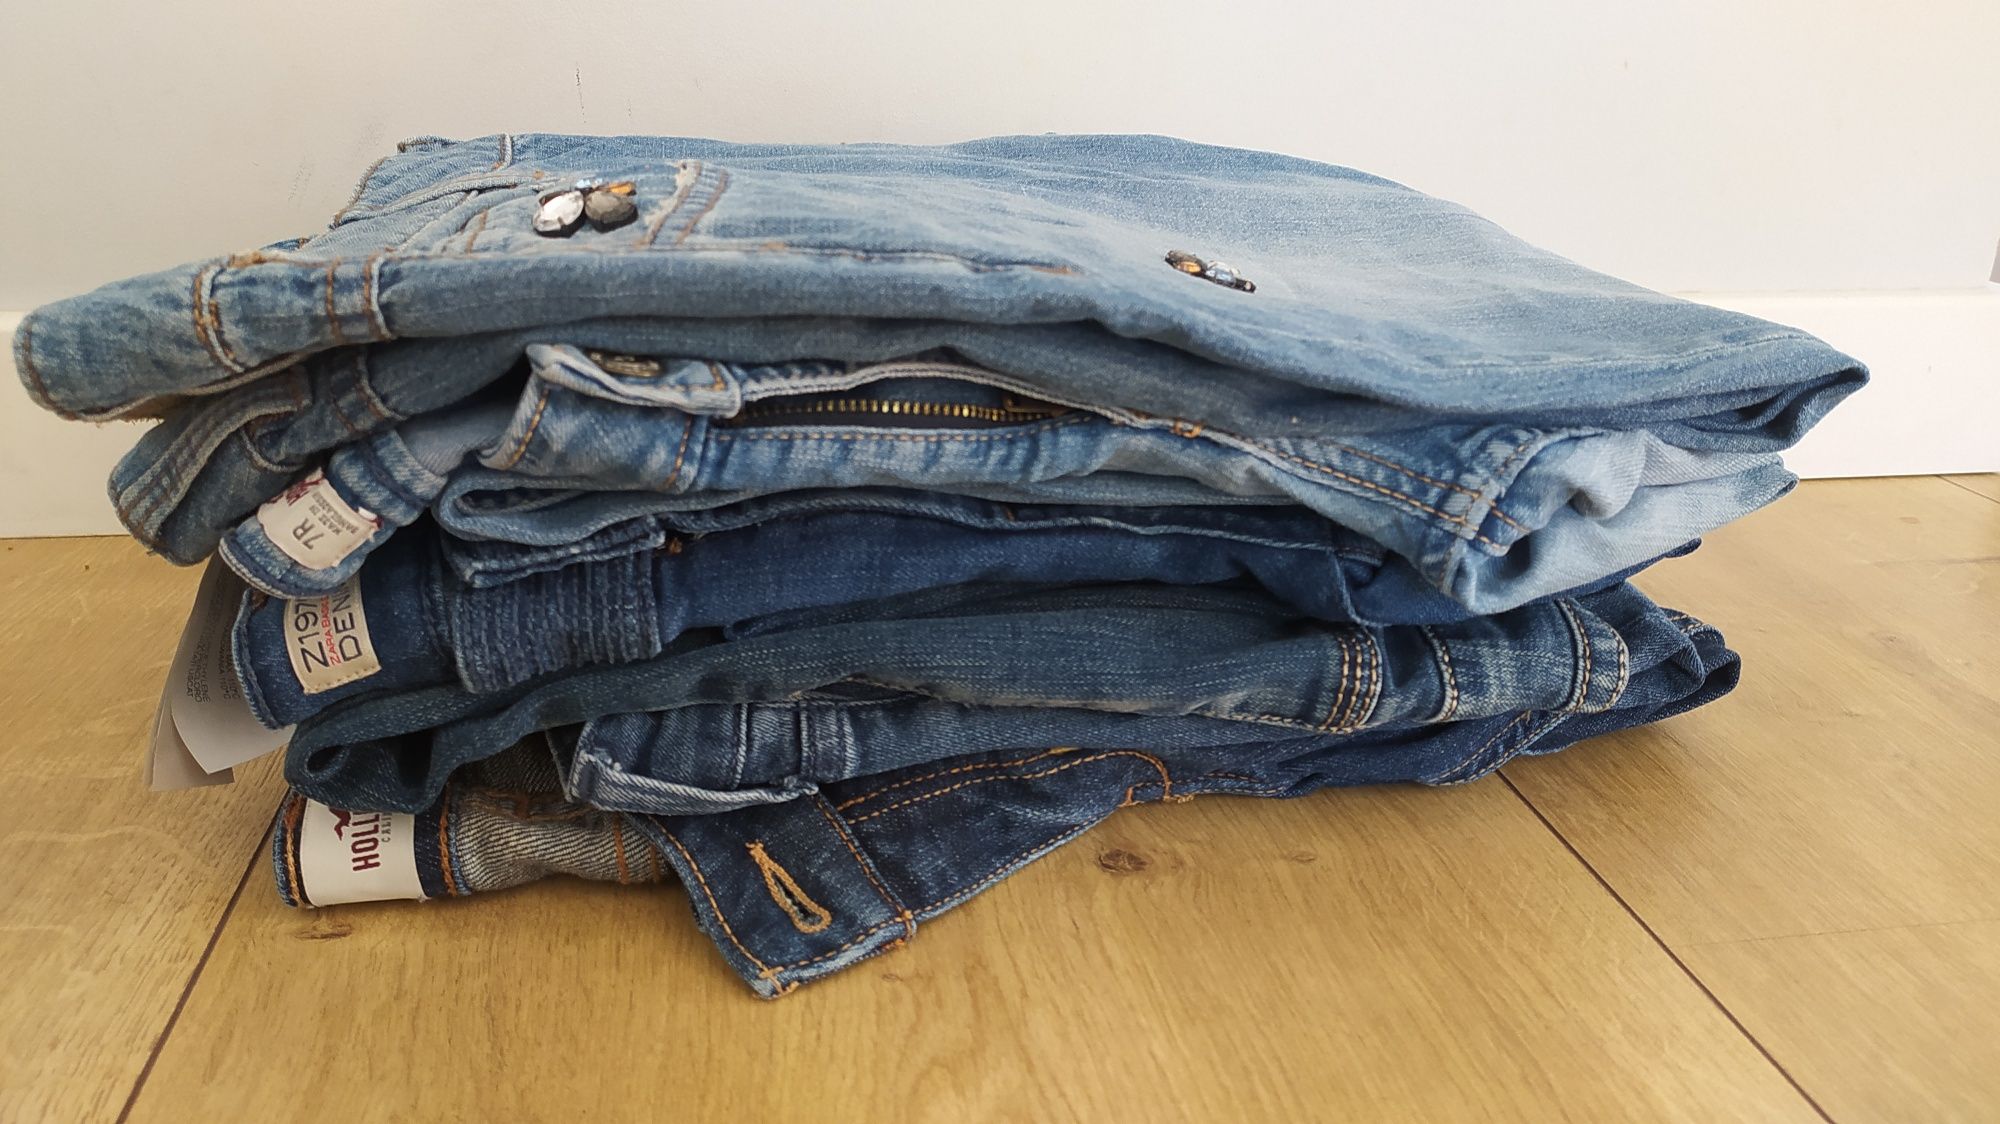 Zestaw spodni damskich jeansy 36 Hollister osobne przetarcia